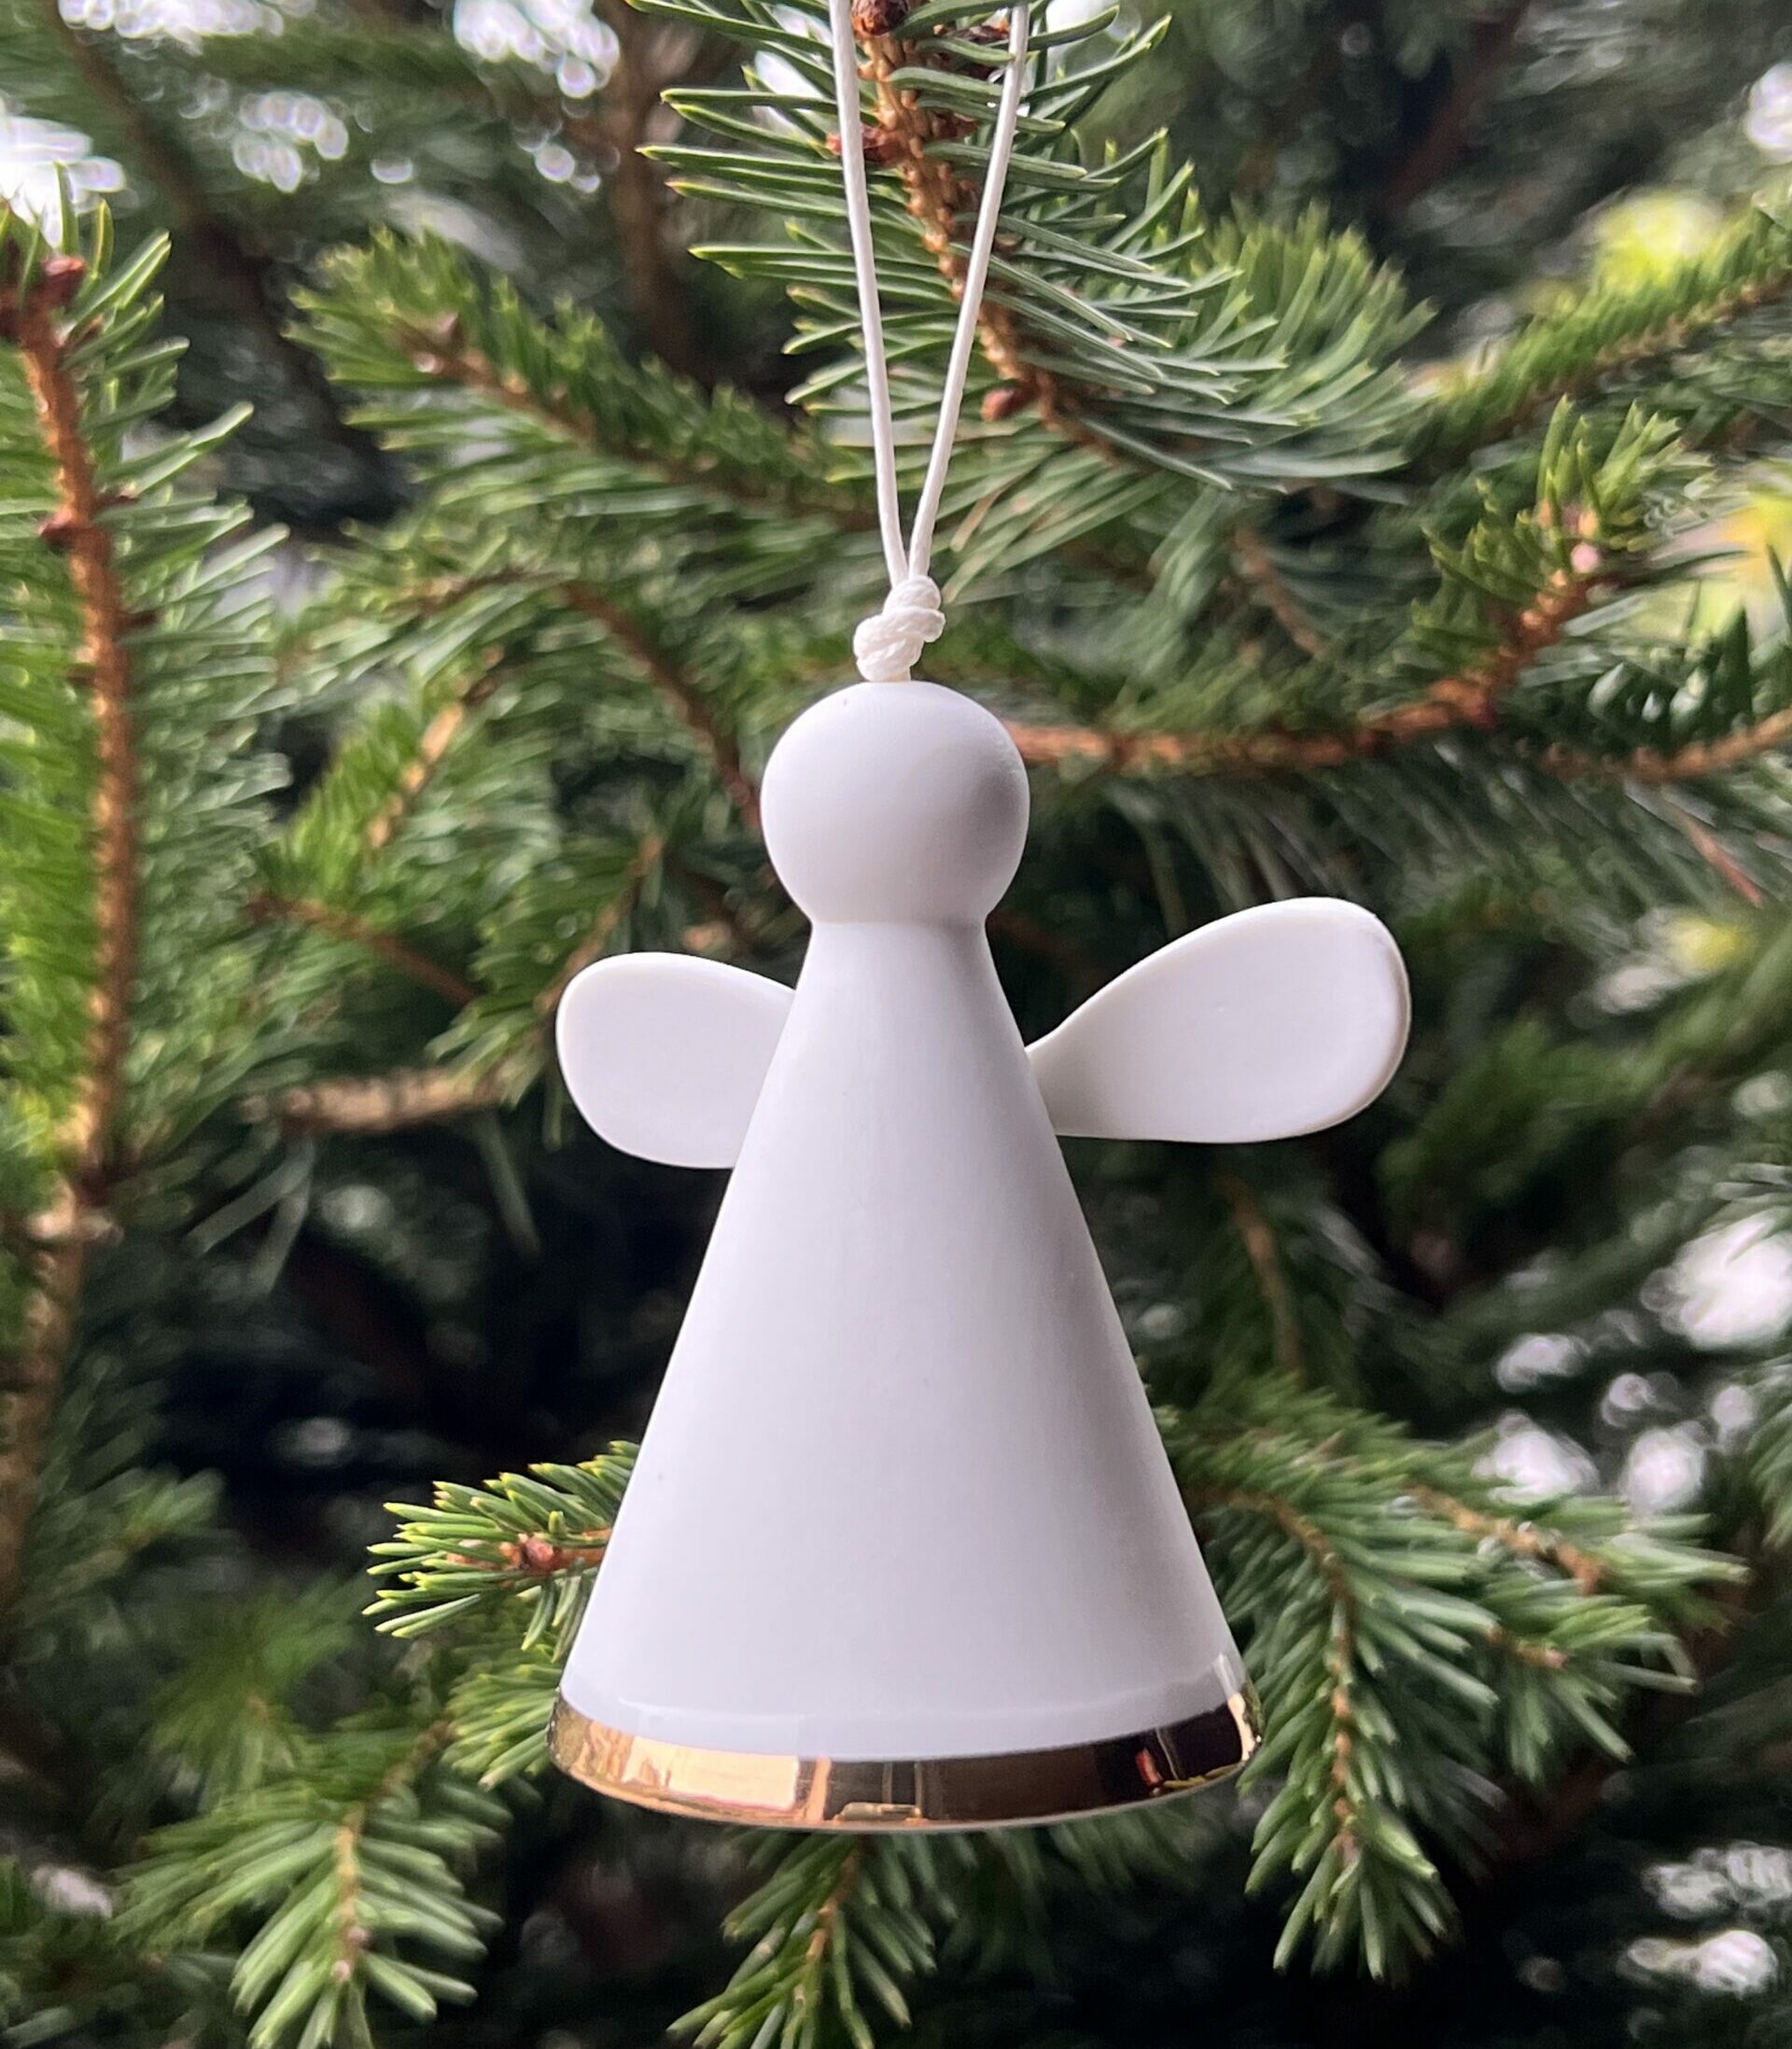 Petit ange gardien en porcelaine blanche,Il est équipé d’une petite clochette pour accompagner l’esprit joyeux des fêtes de fin d’année. Objet poétique, il saura trouver sa place sur votre sapin de Noël.